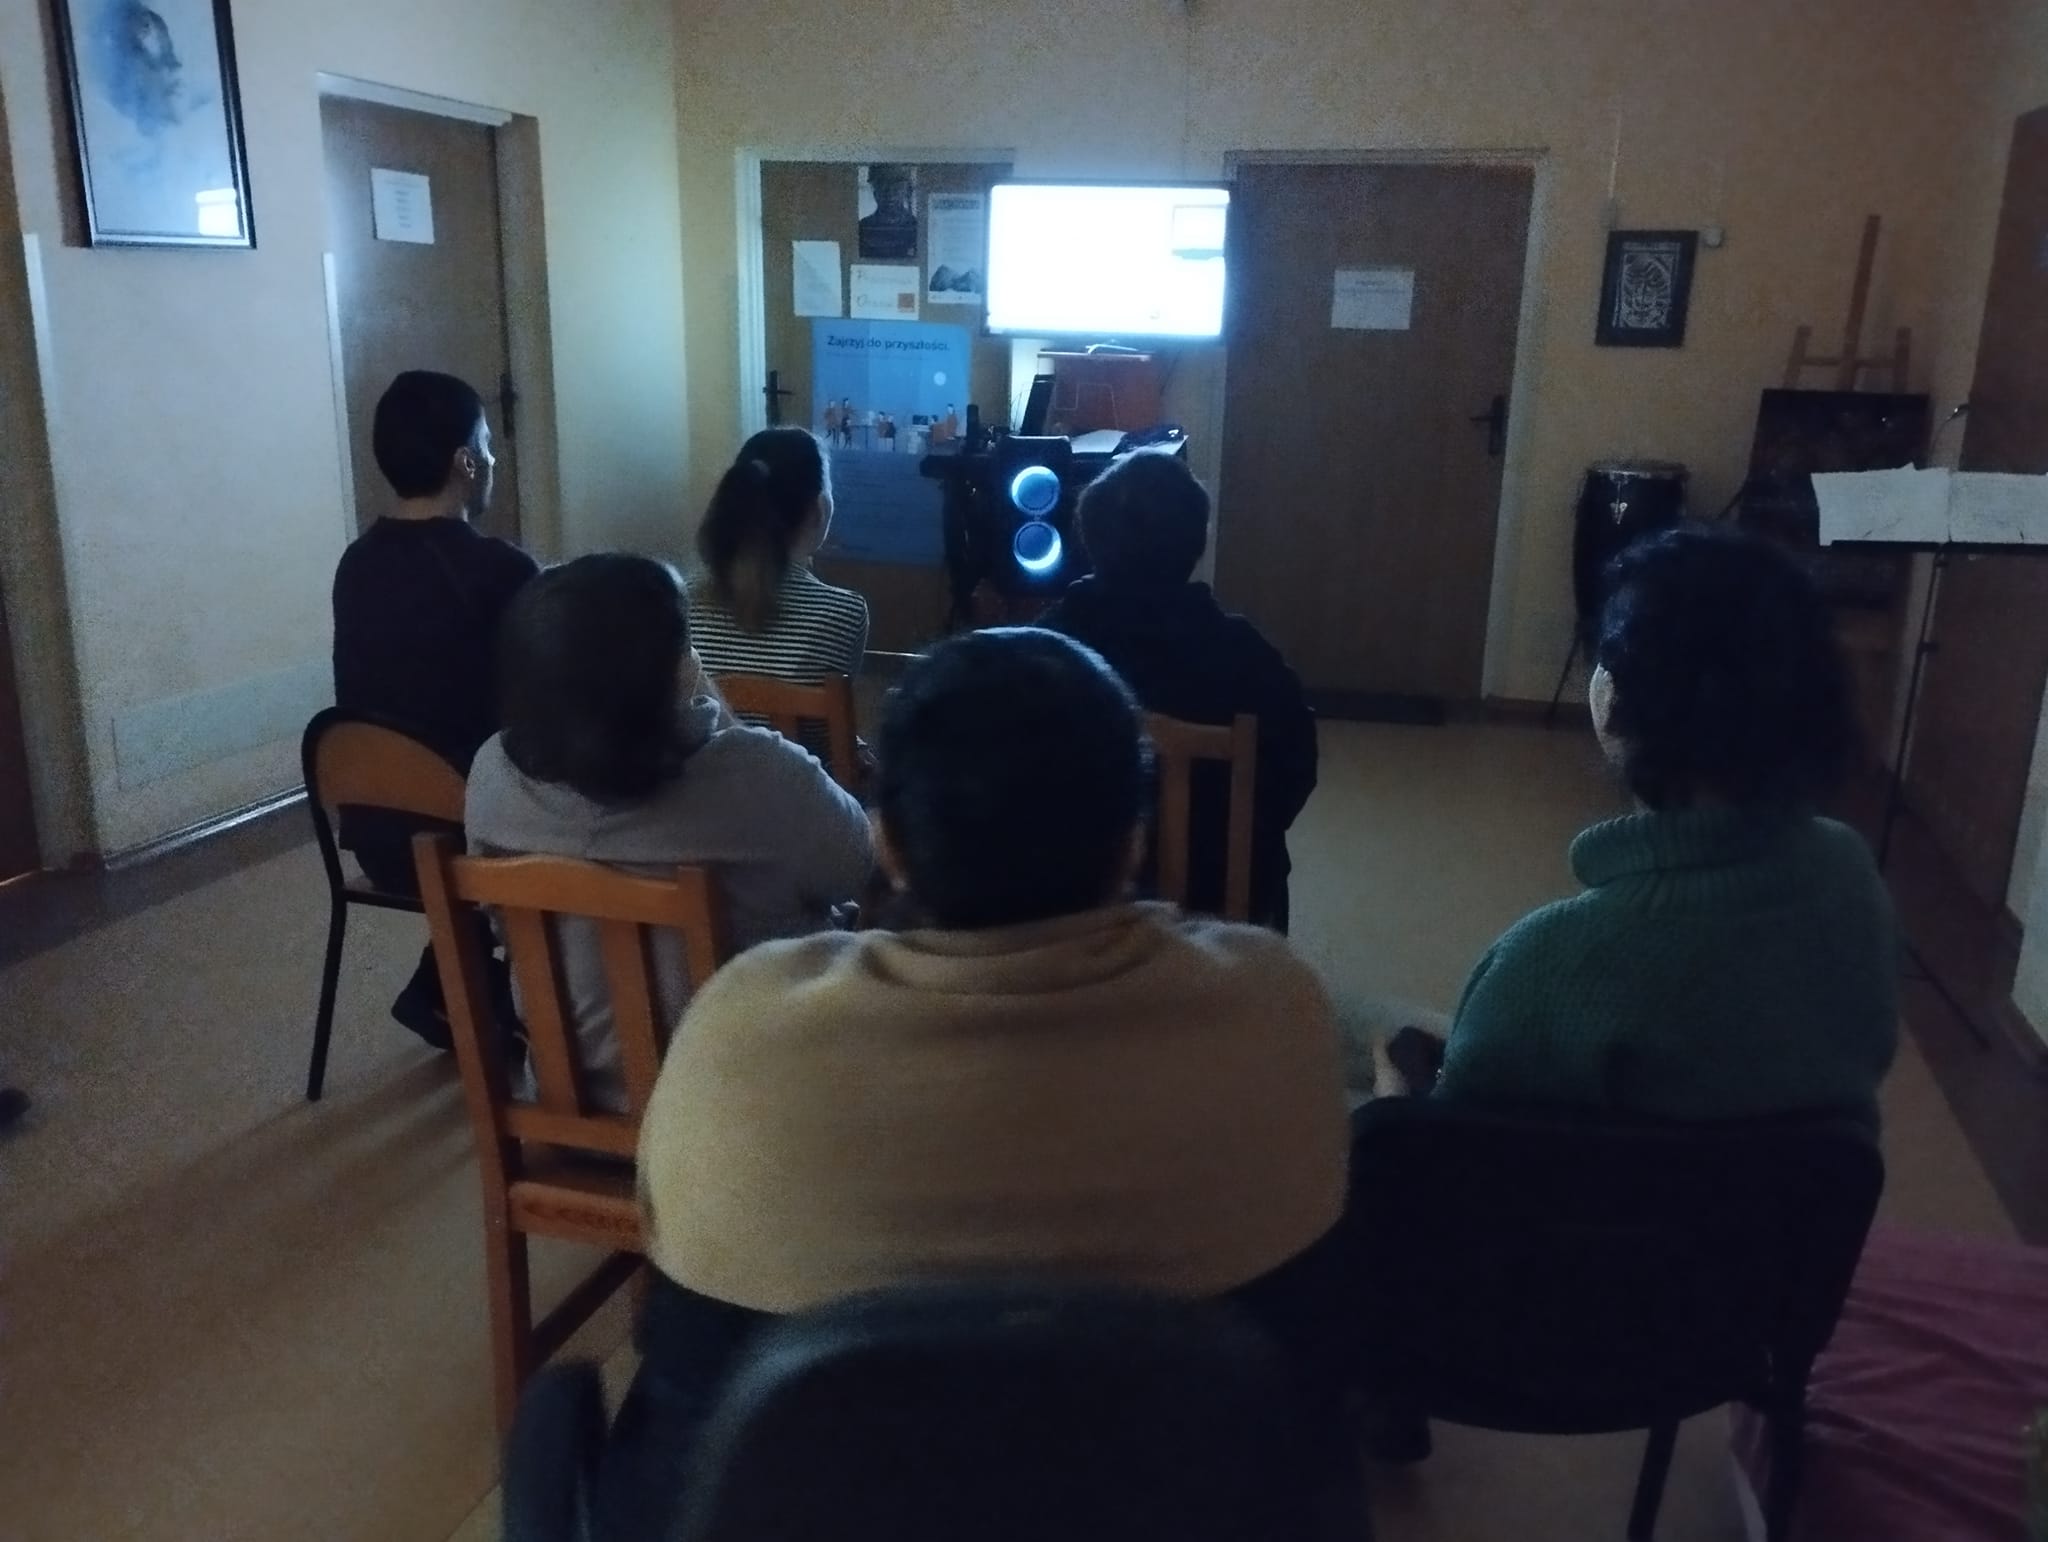 Grupa osób ogląda prezentację na ekranie.